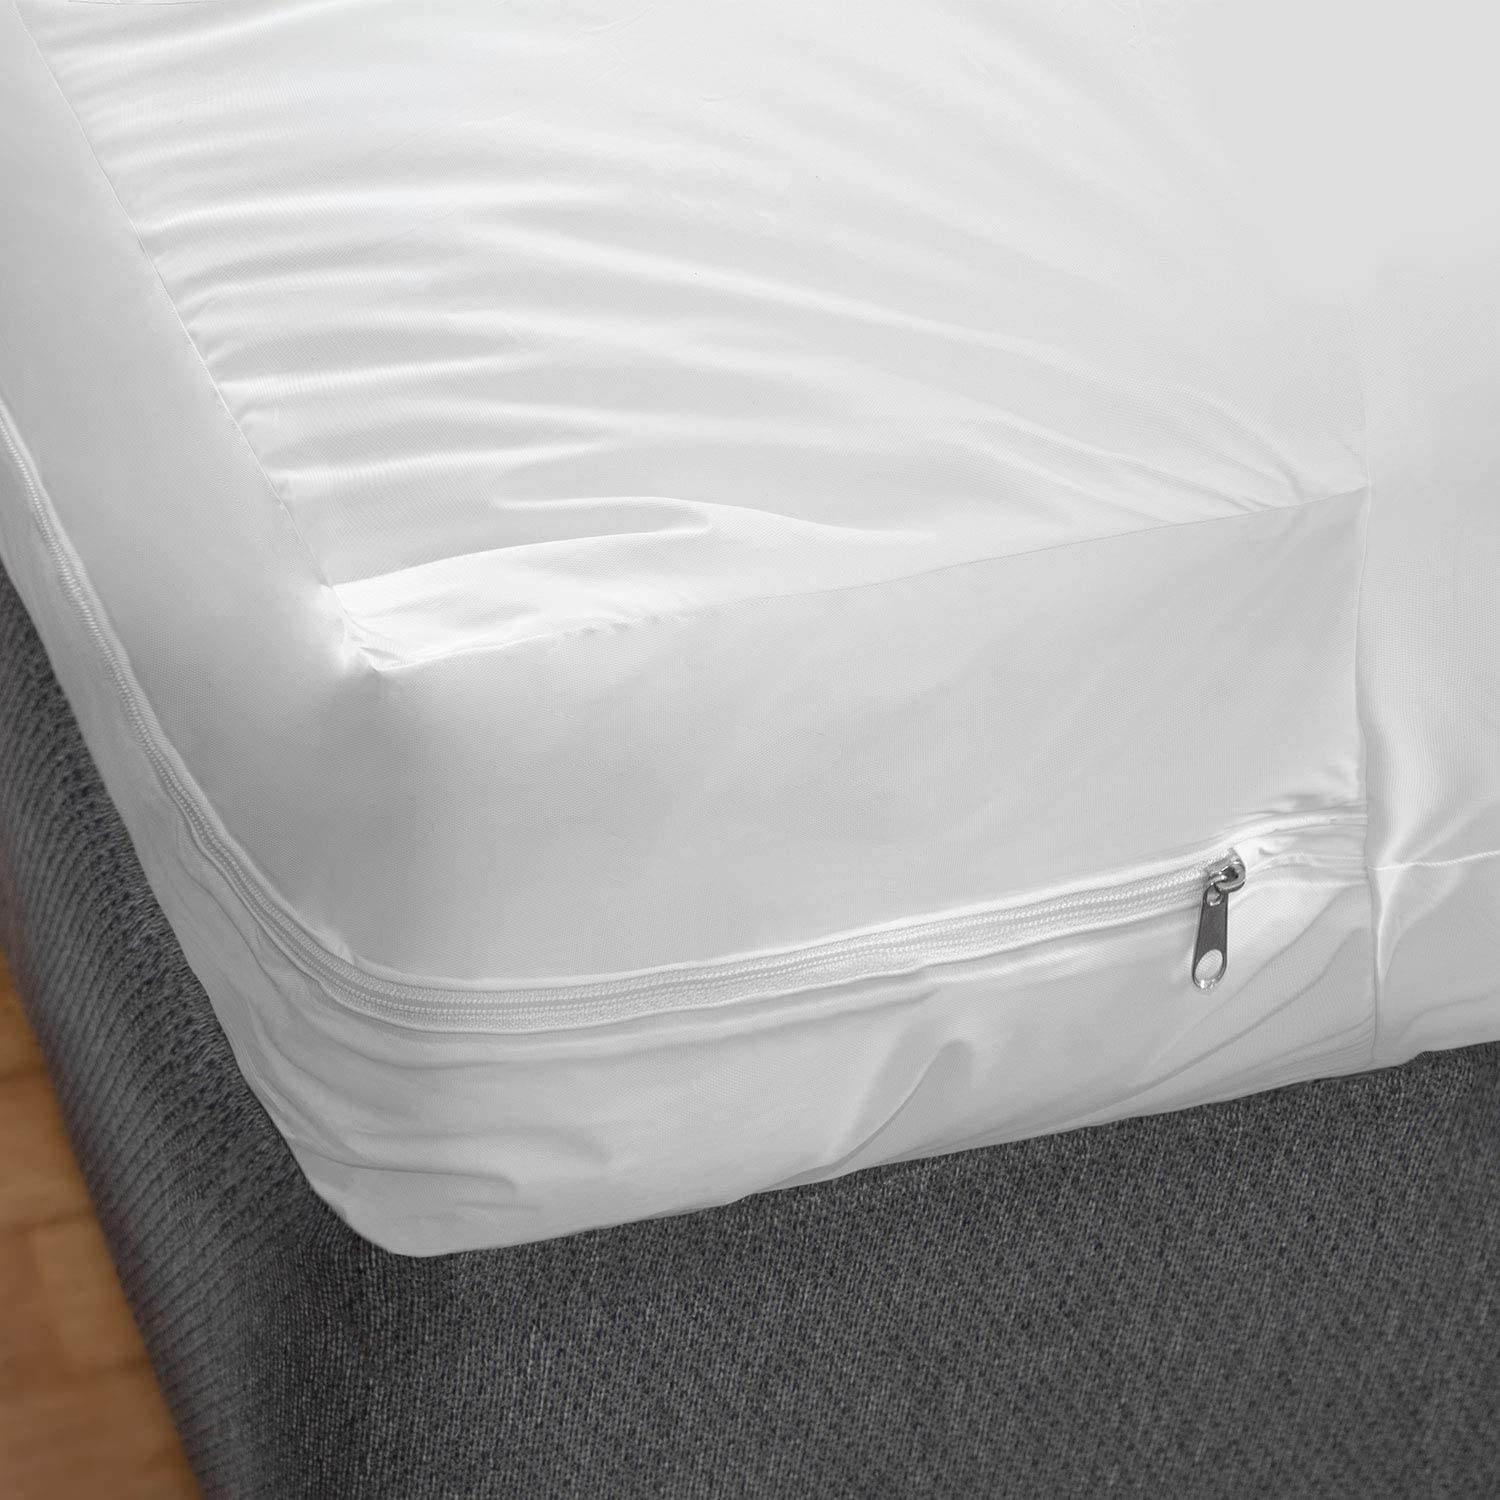 Zippered trundle bed mattress covers extend mattress life.